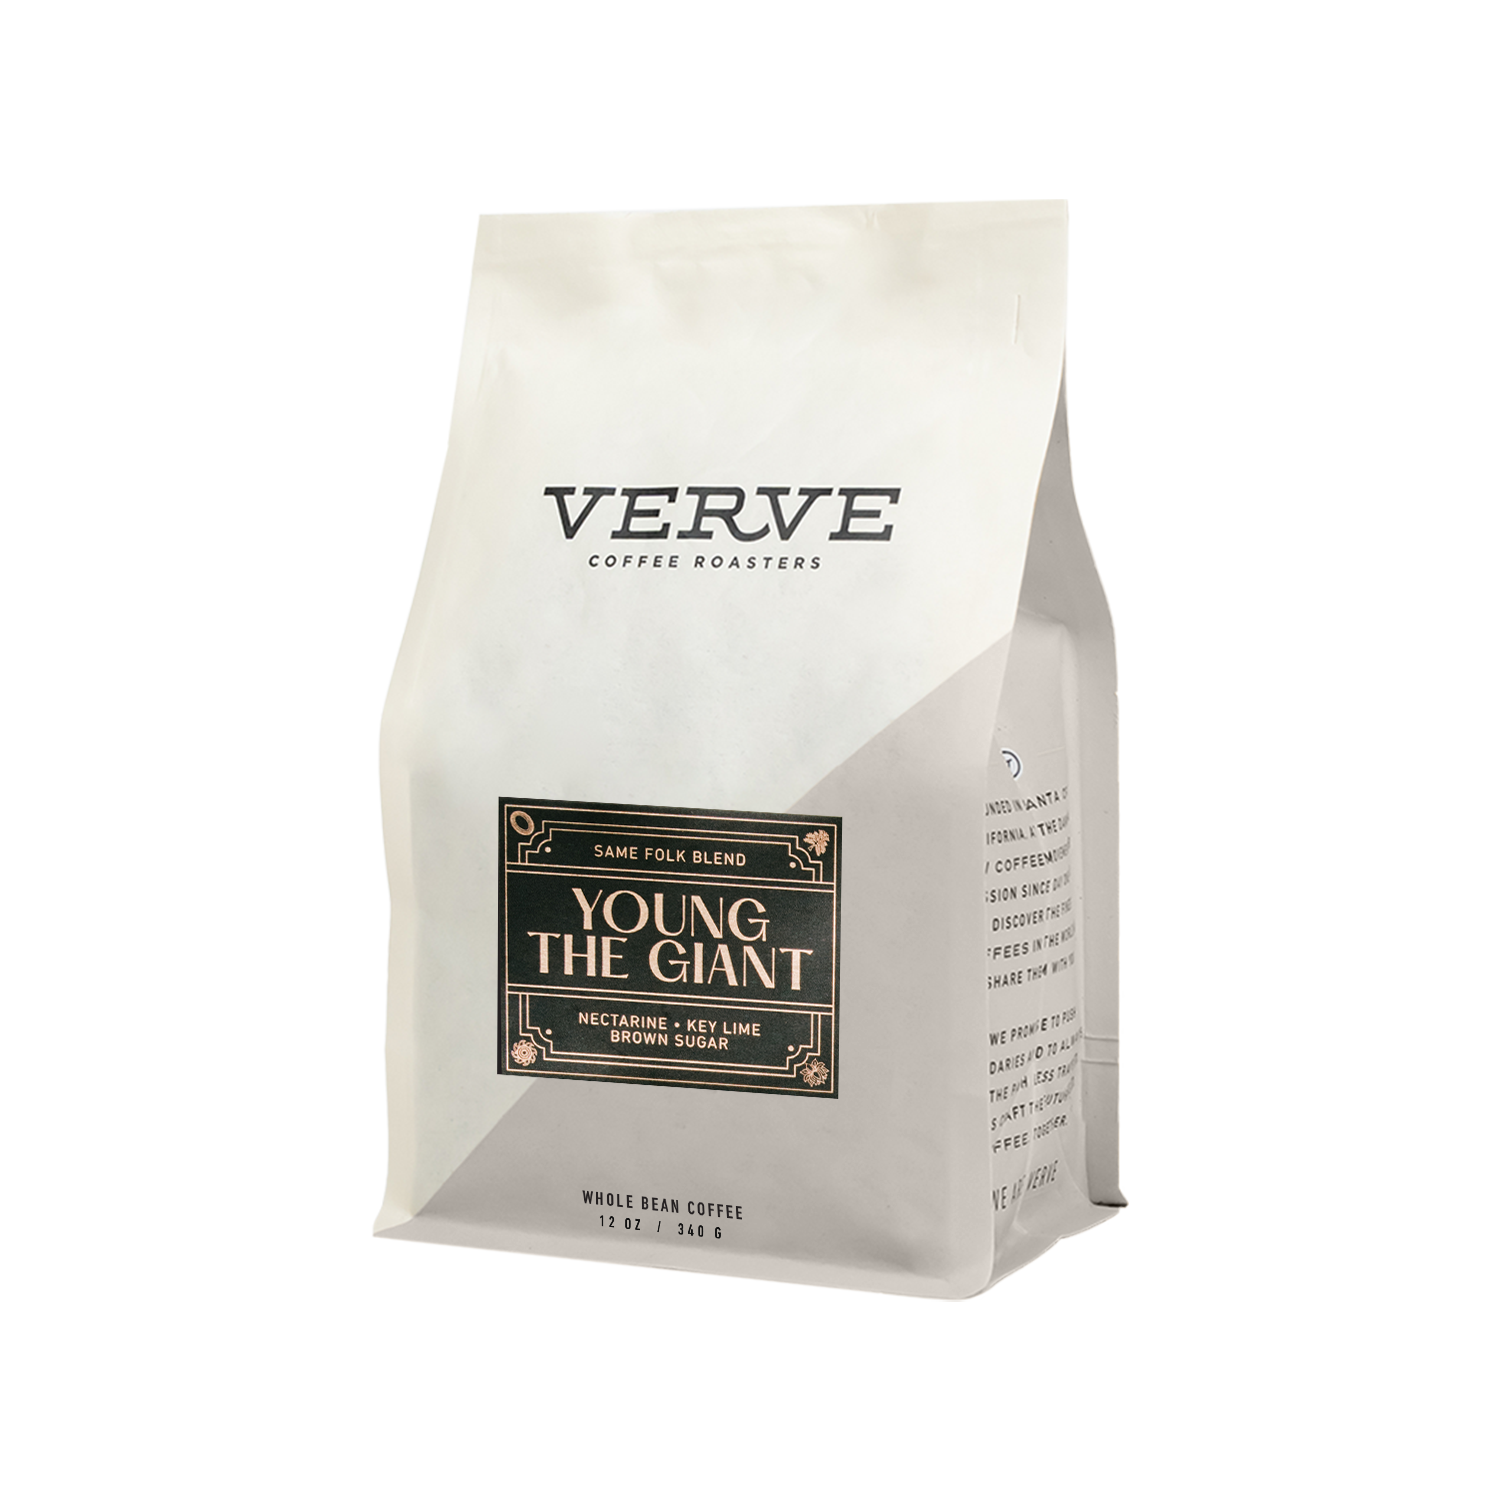 YTG / Verve Same Folk Blend Coffee